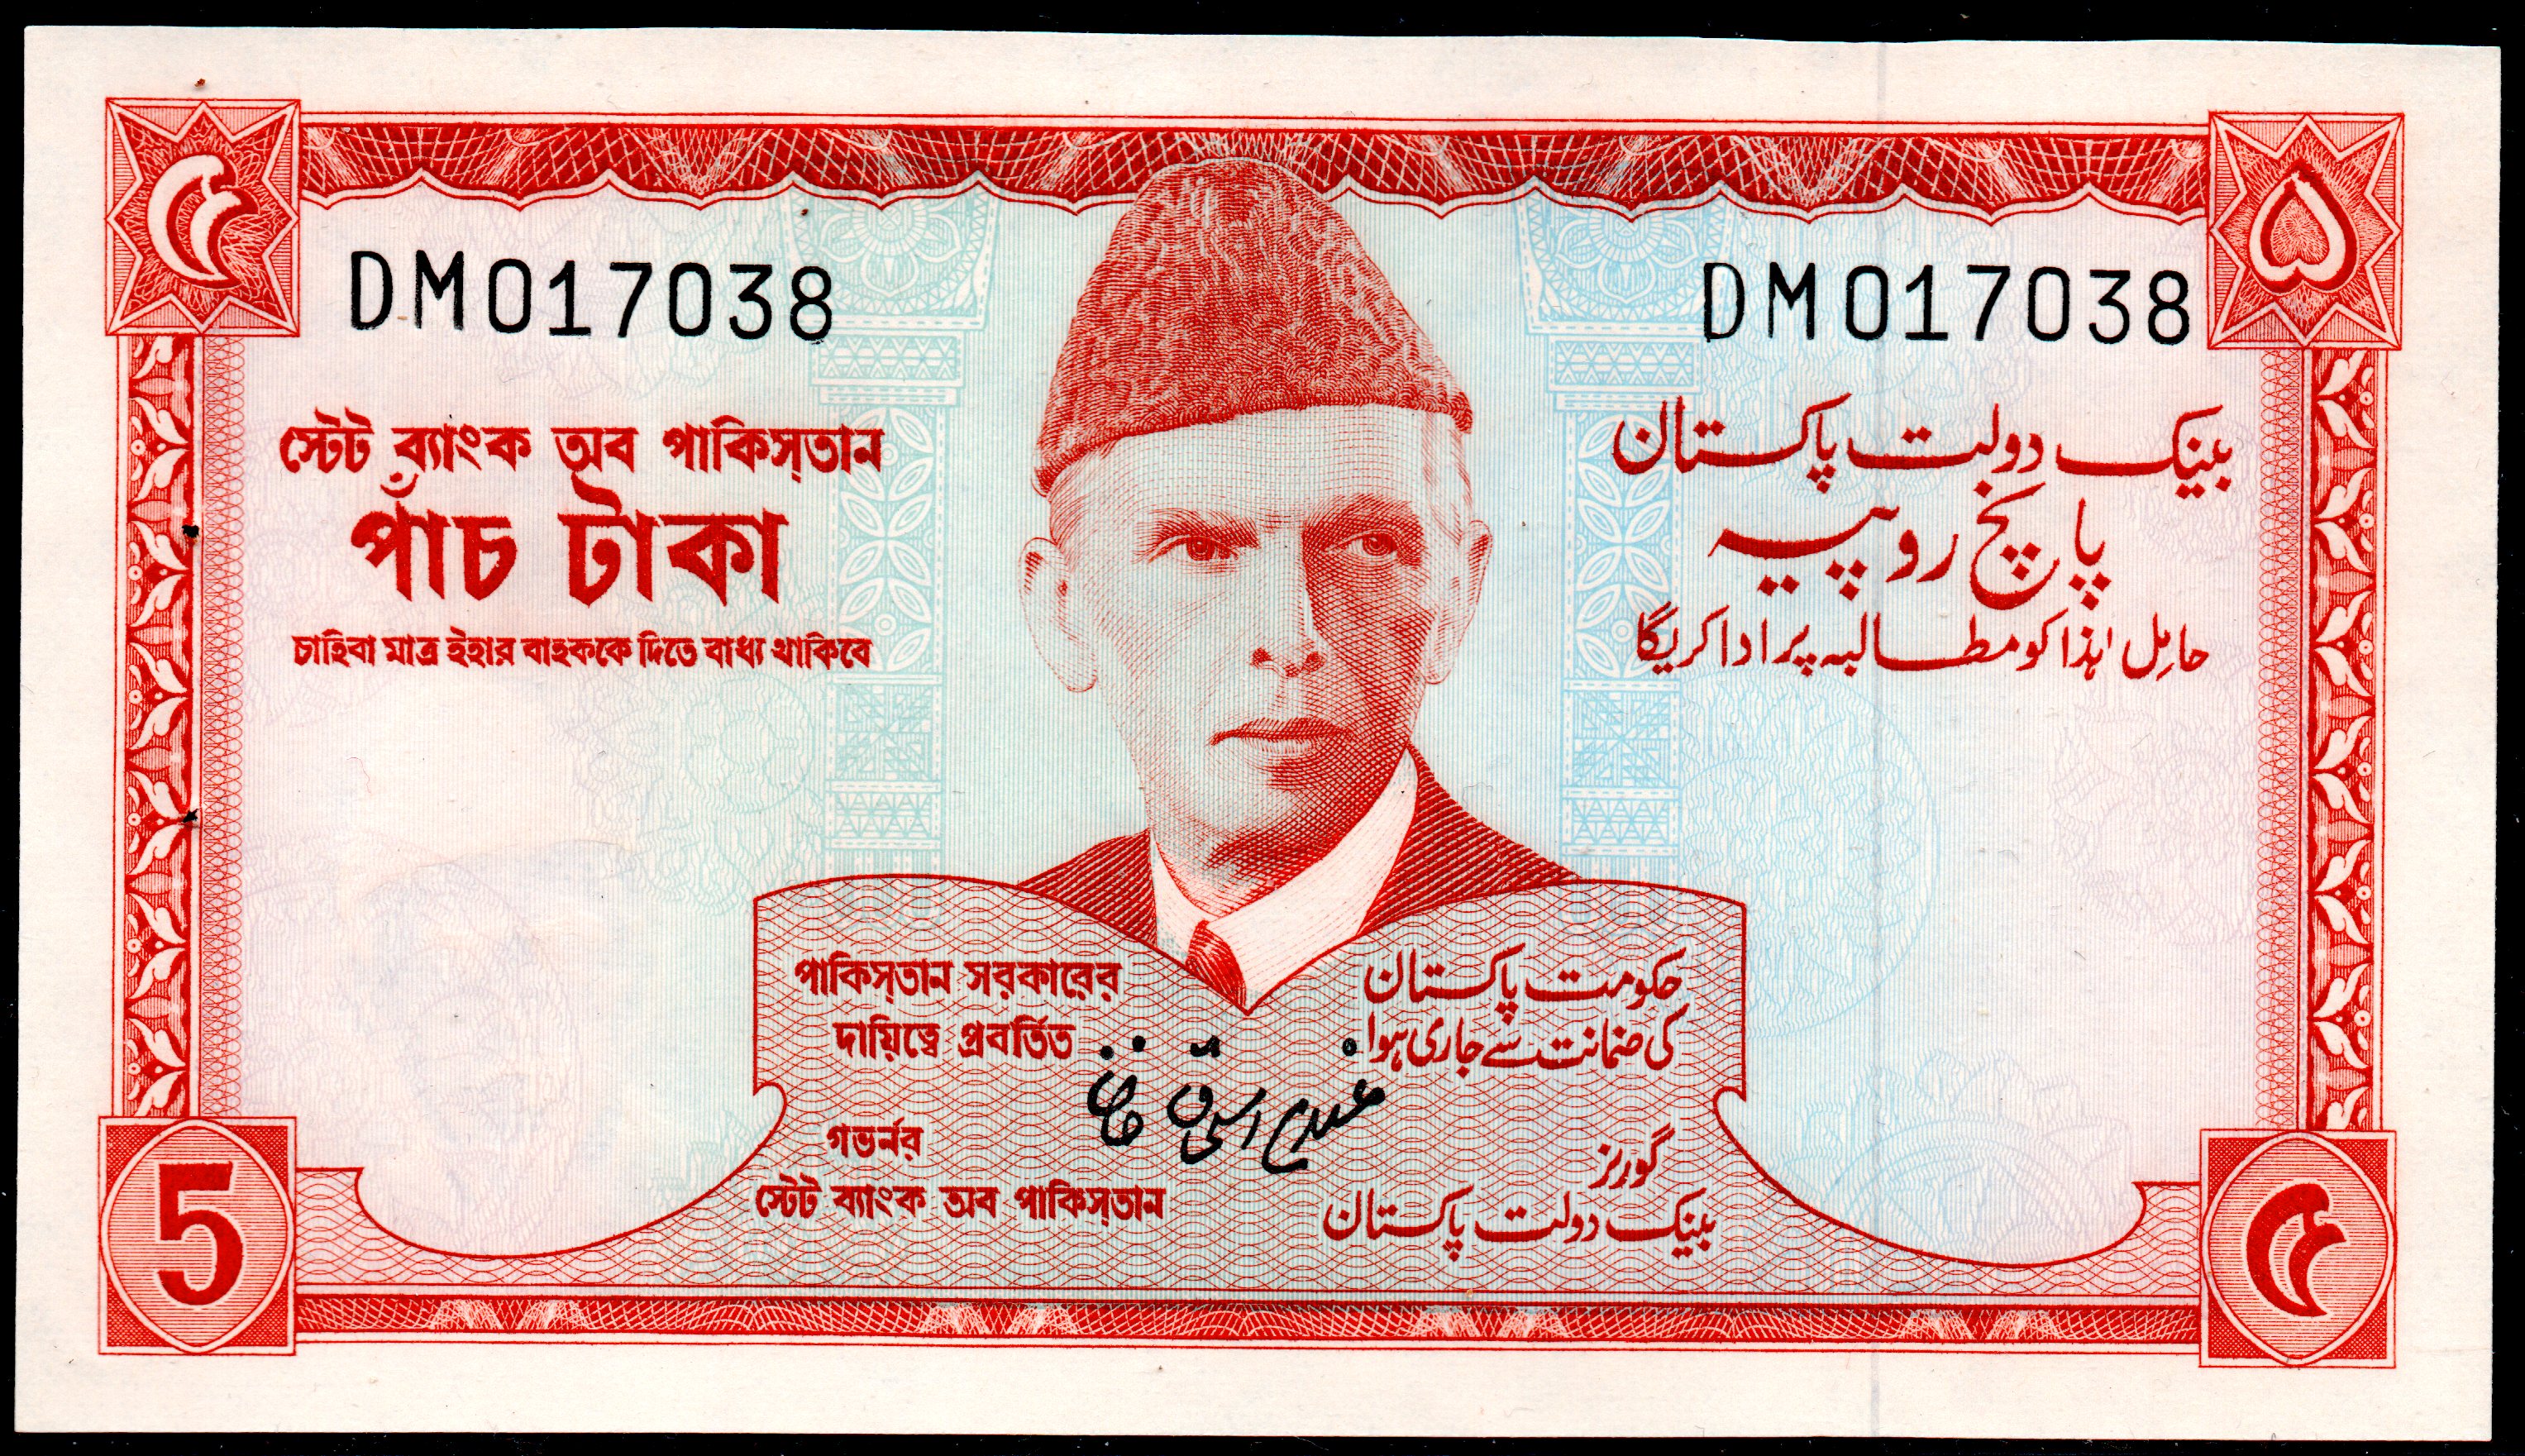 Pakistan 2009 P53 5 Rupees Banknote Unc Paper Money 